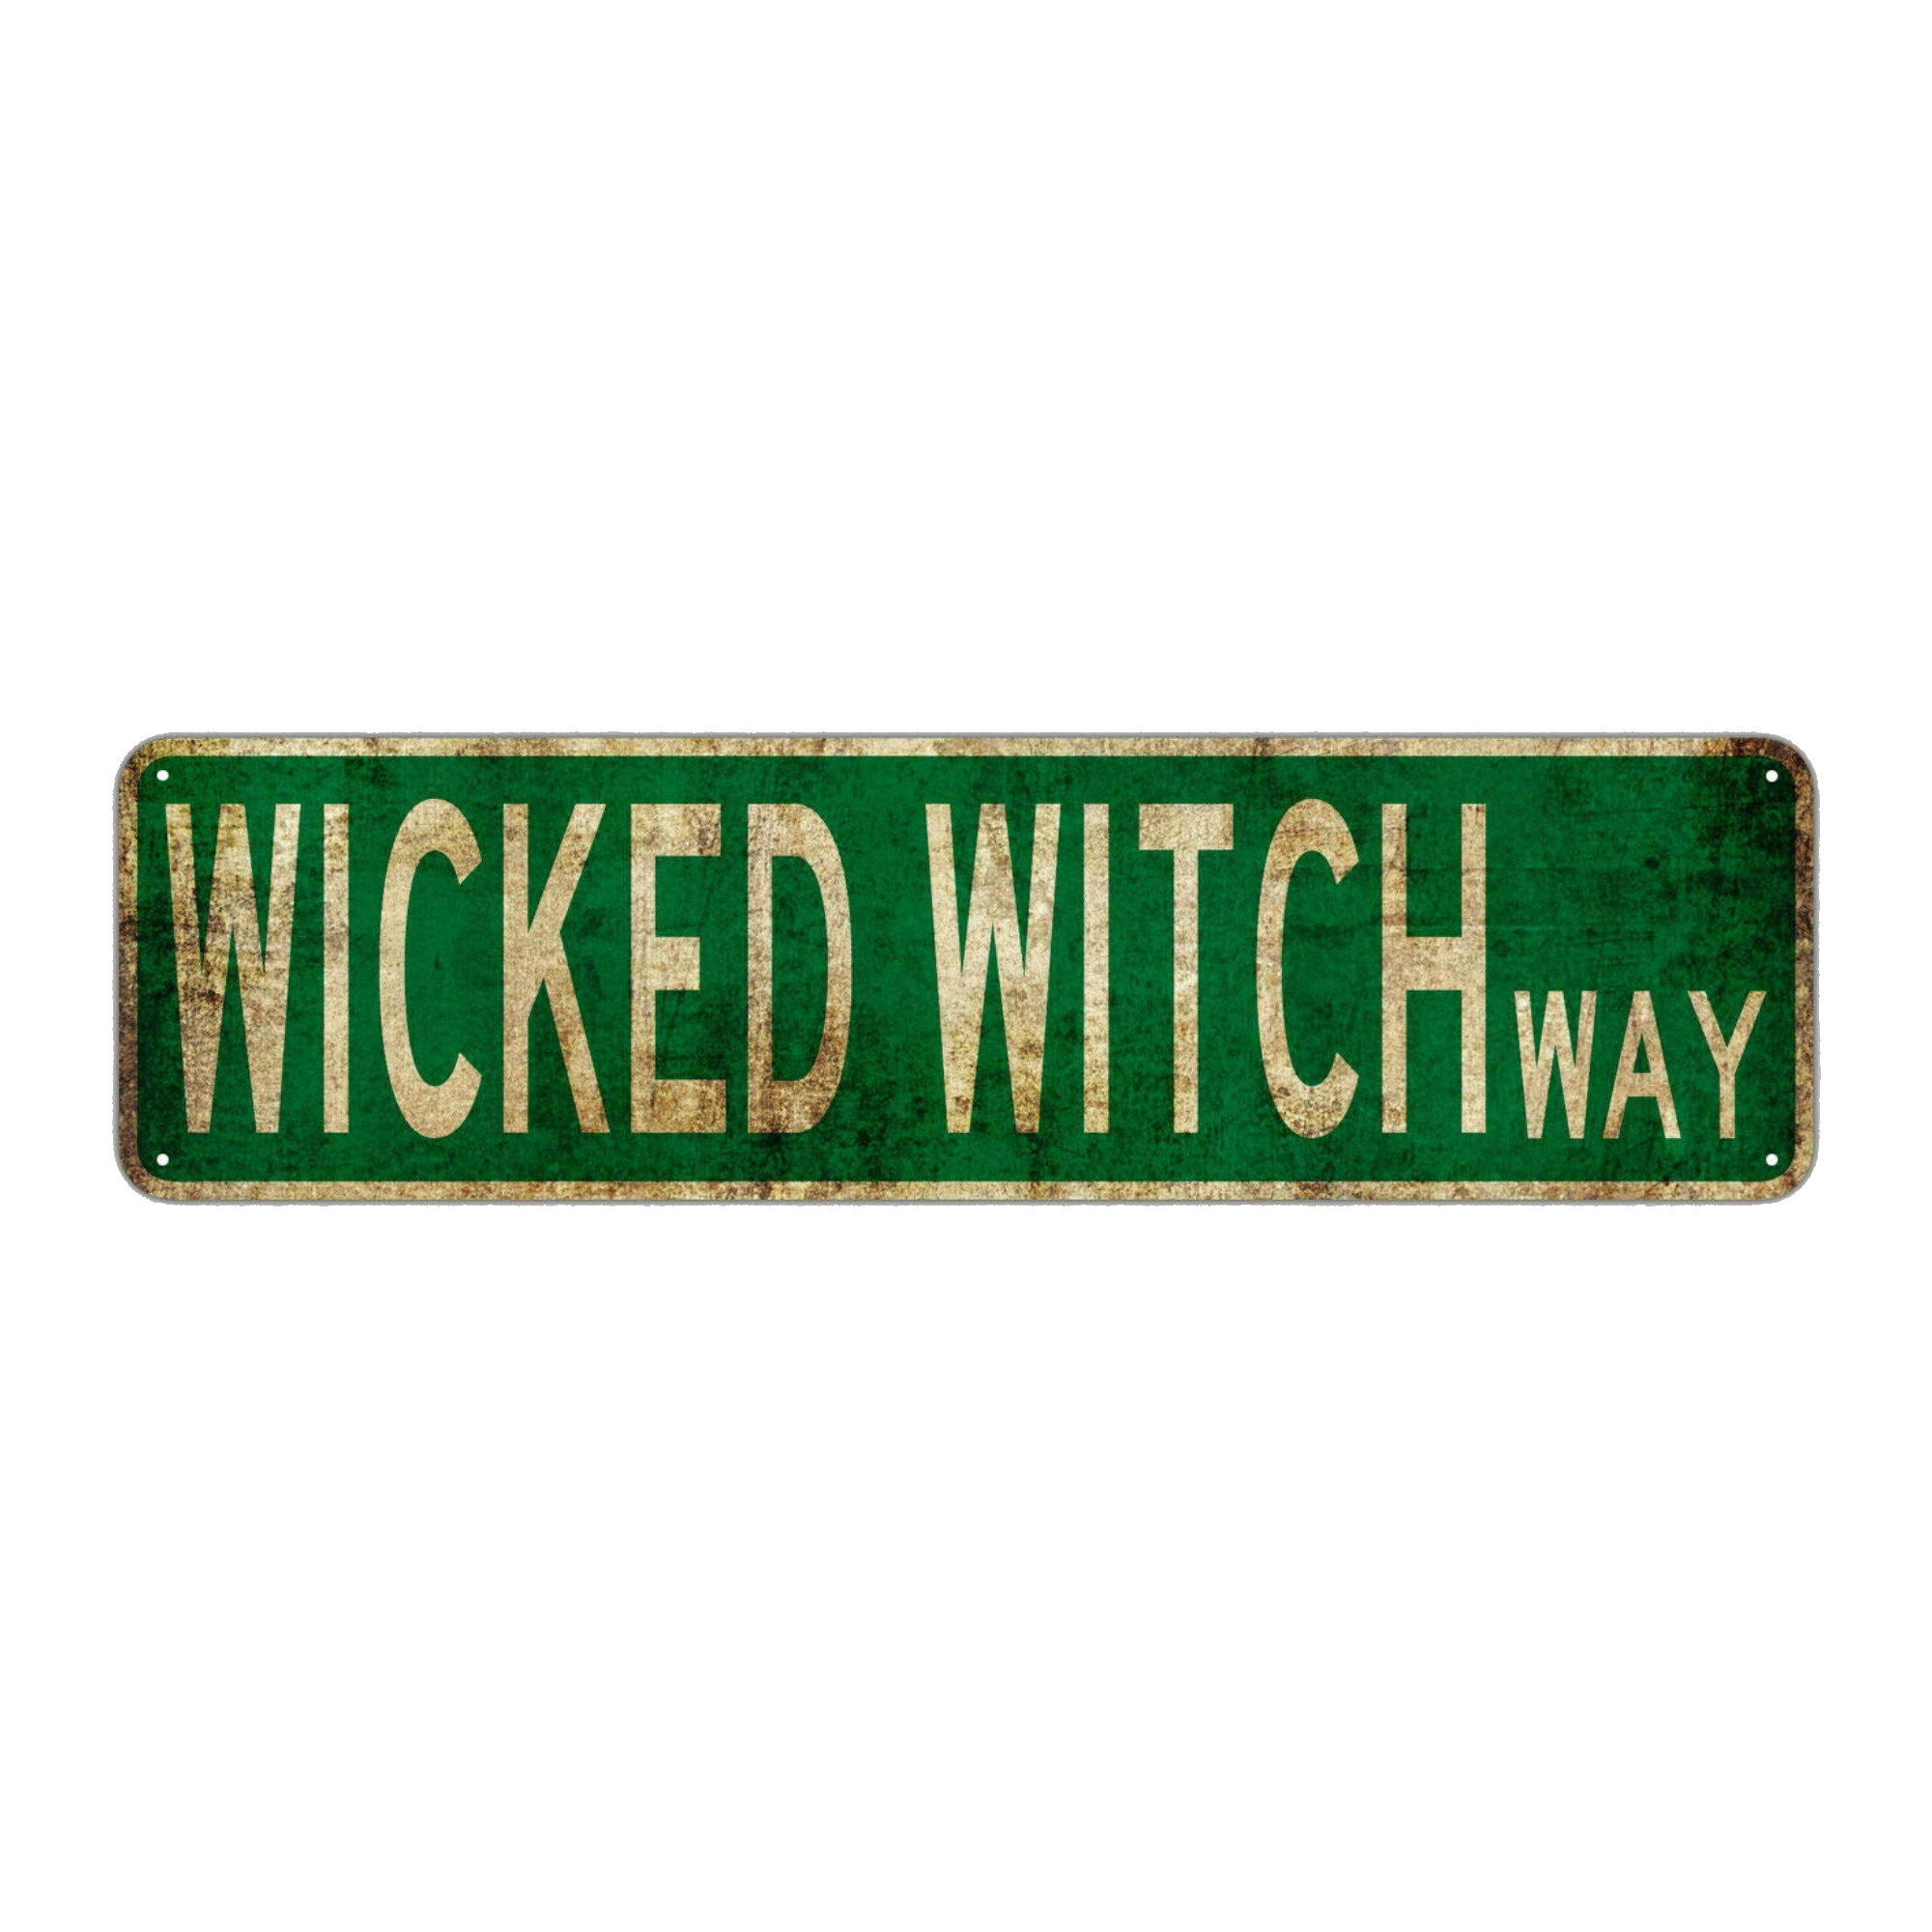 Placa Wicked Witch Way - R$ 40,00